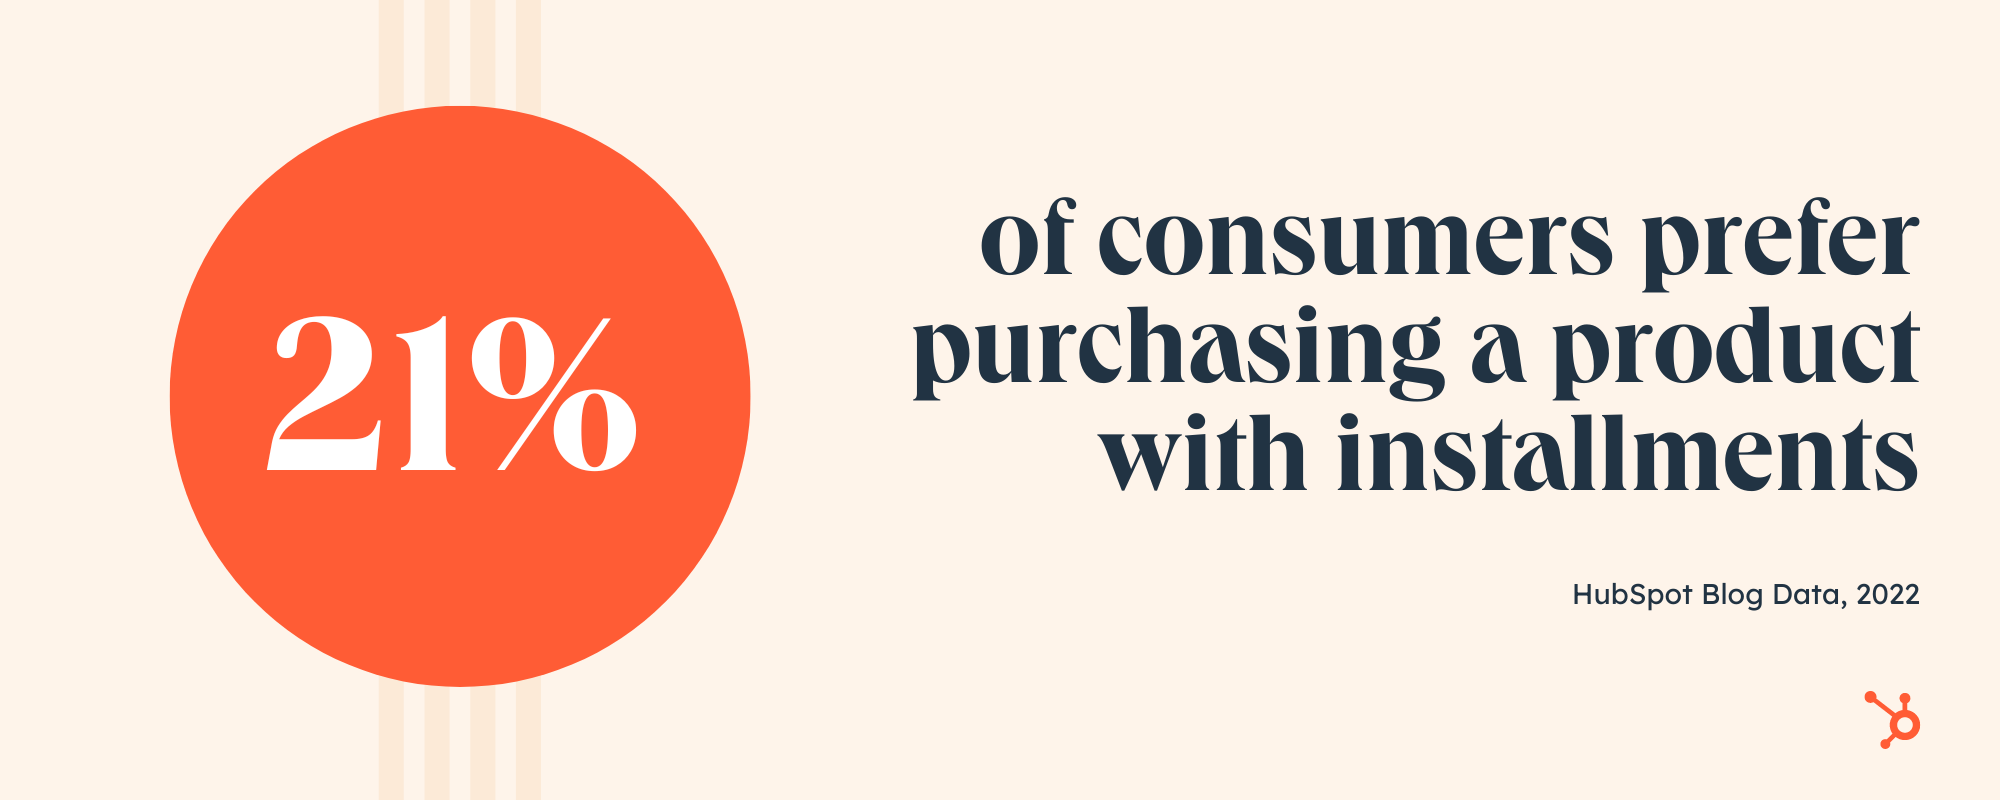 روند خرید: تنها 21 درصد از مصرف کنندگان ترجیح می دهند از طریق اقساط پرداخت کنند